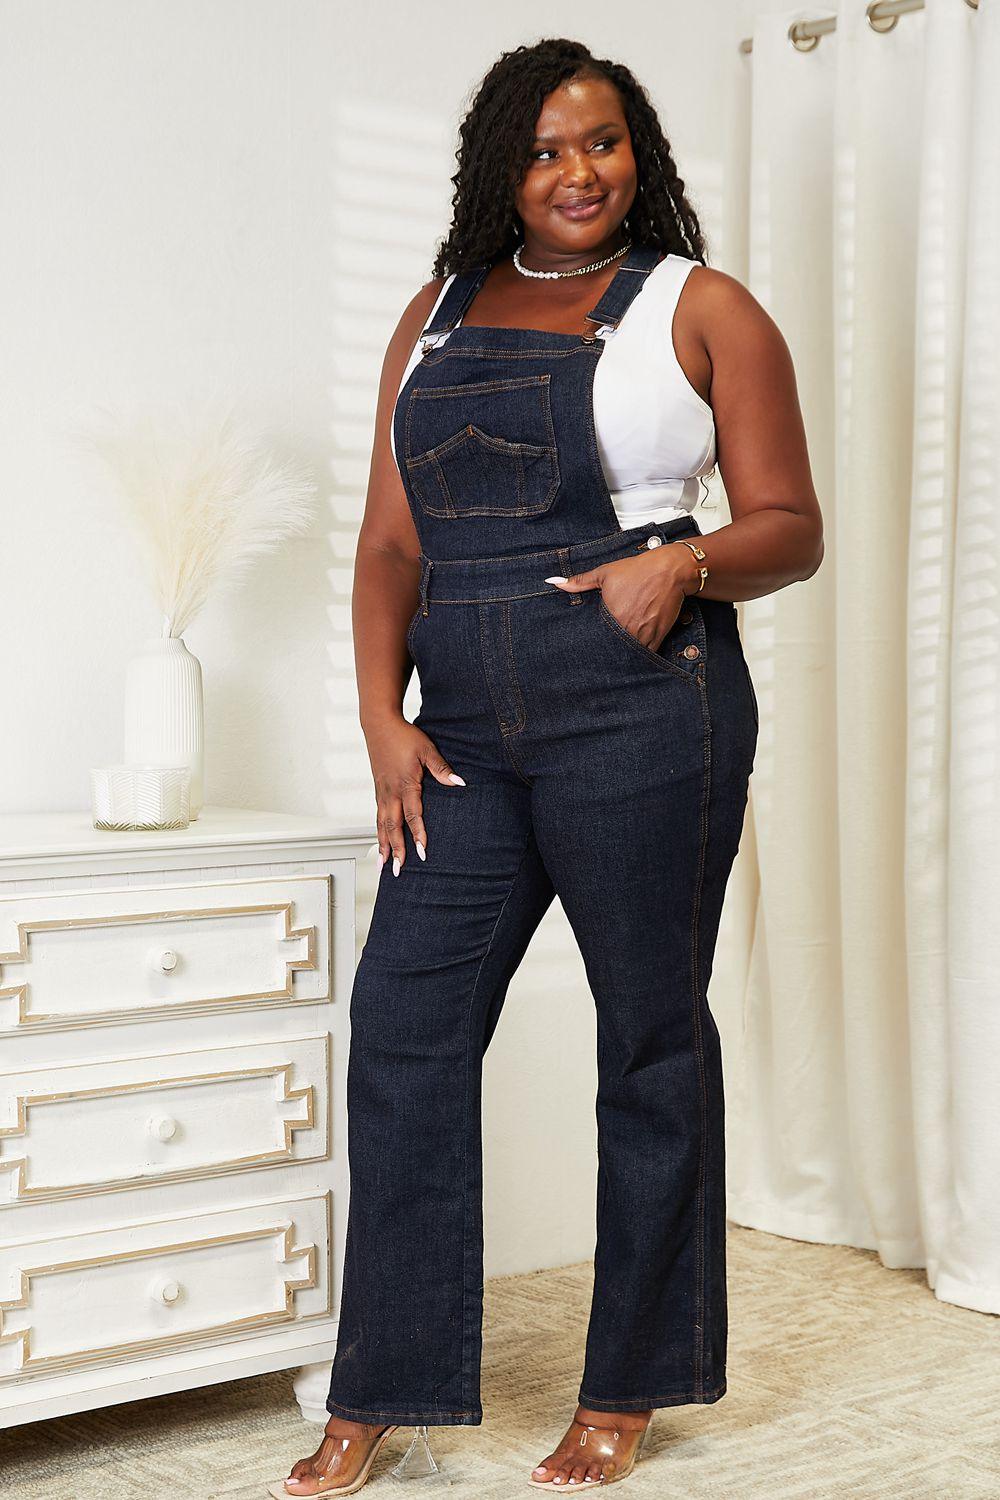 Women's Jeans Judy Blue Full Size High Waist Classic Denim Overalls